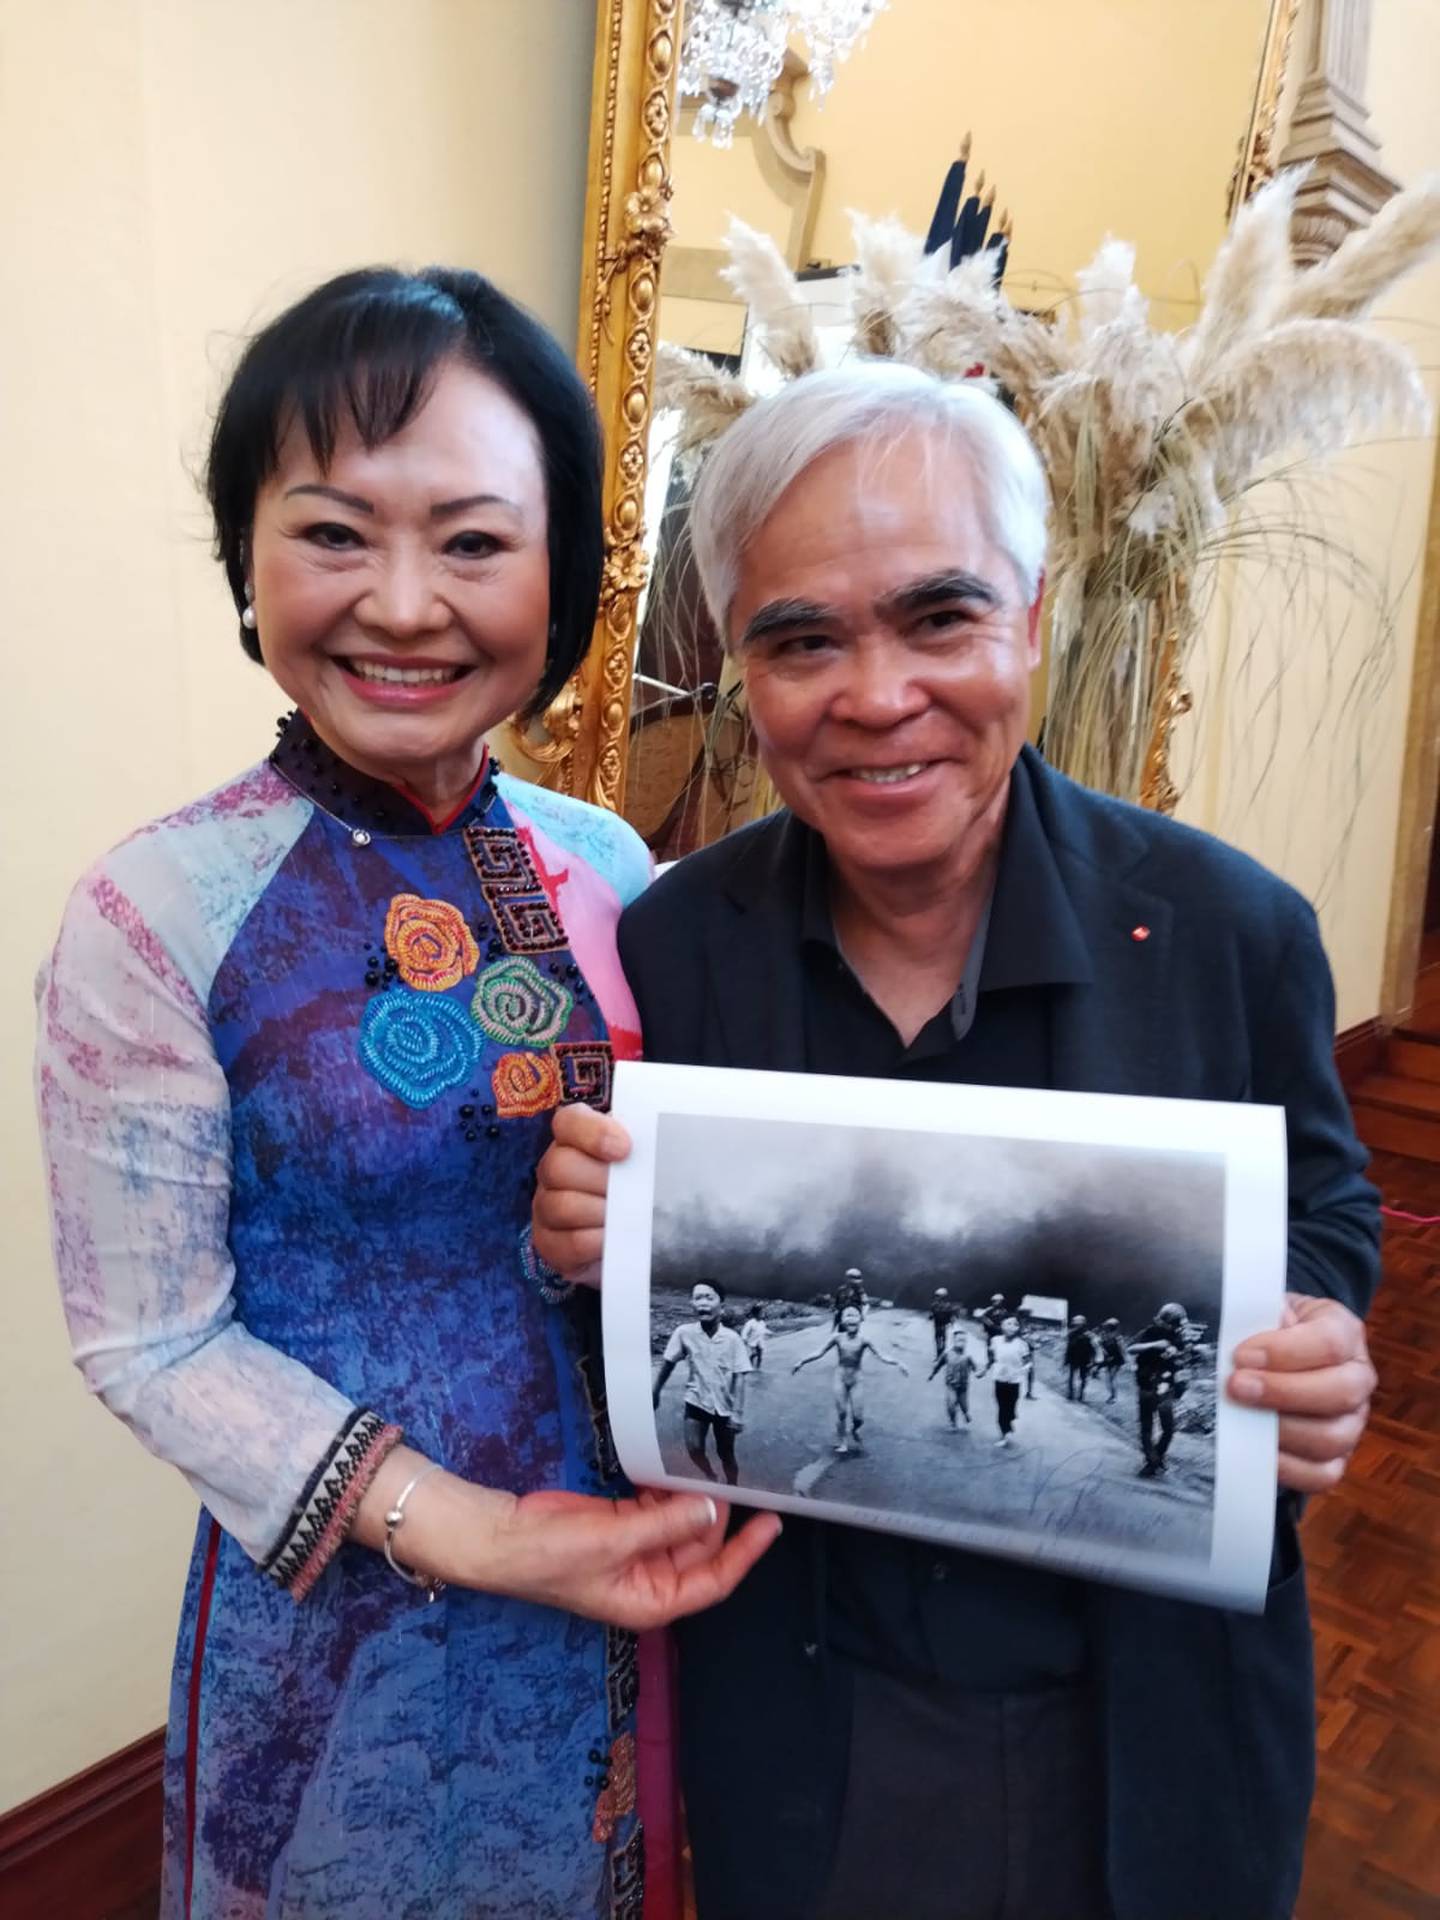 Los vietnamitas Kim Phuc Phan Thi y Huynh Cong Út, conocido como Nick Ut, están en Costa Rica para promocionar la primera edición en español del libro “La Ruta del Fuego” que Kim escribió en el 2017, pero que hasta este año se tradujo al español.